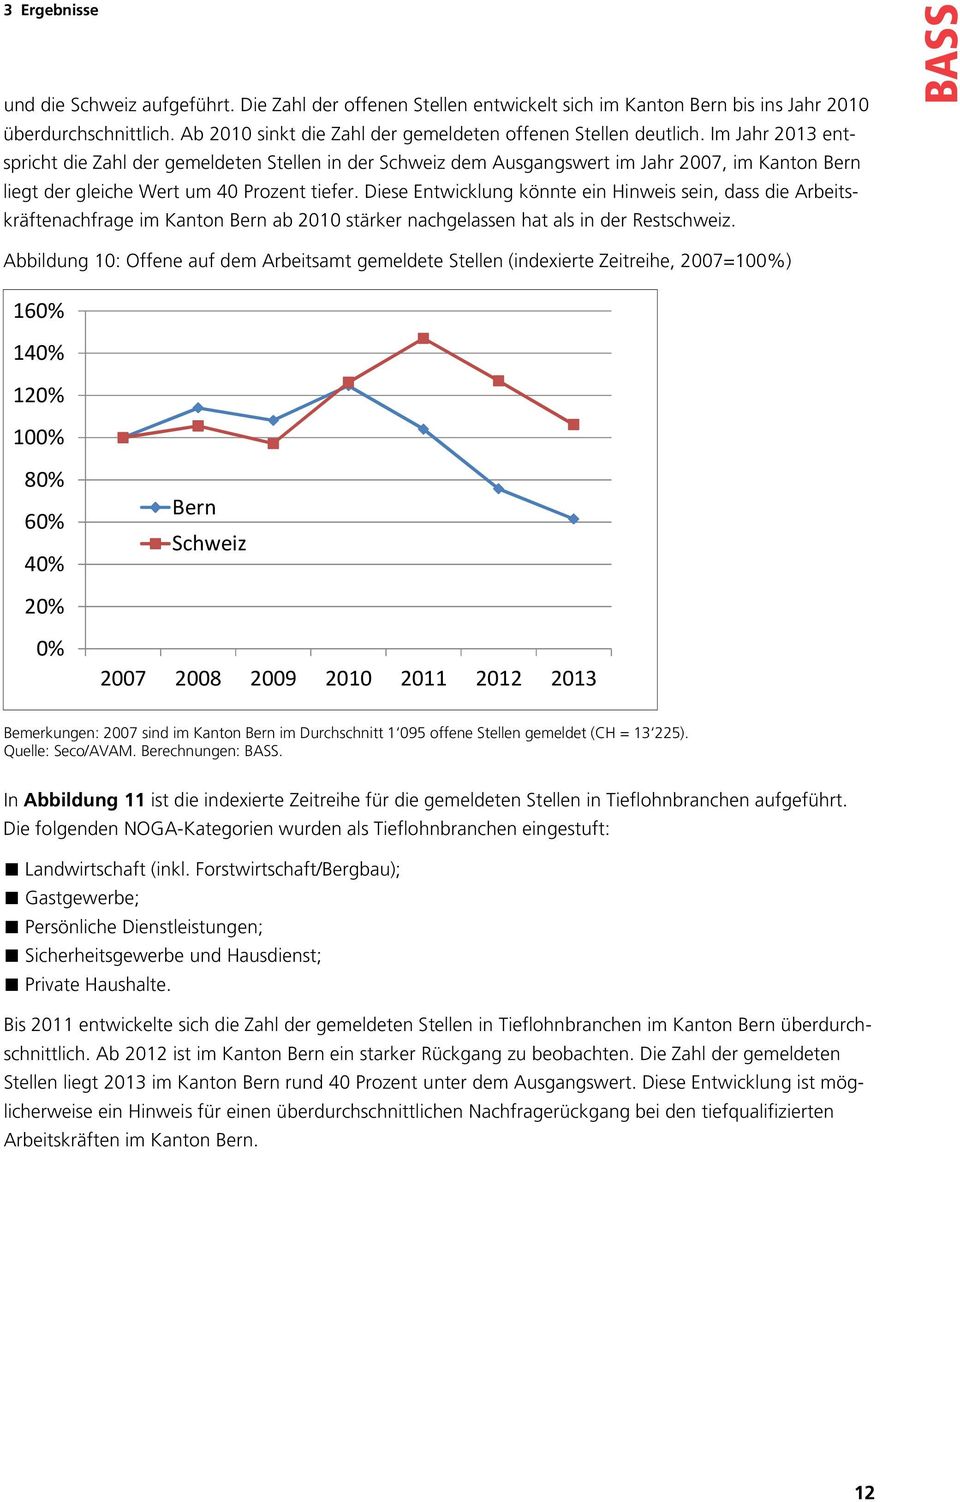 Diese Entwicklung könnte ein Hinweis sein, dass die Arbeitskräftenachfrage im Kanton Bern ab 2010 stärker nachgelassen hat als in der Restschweiz.